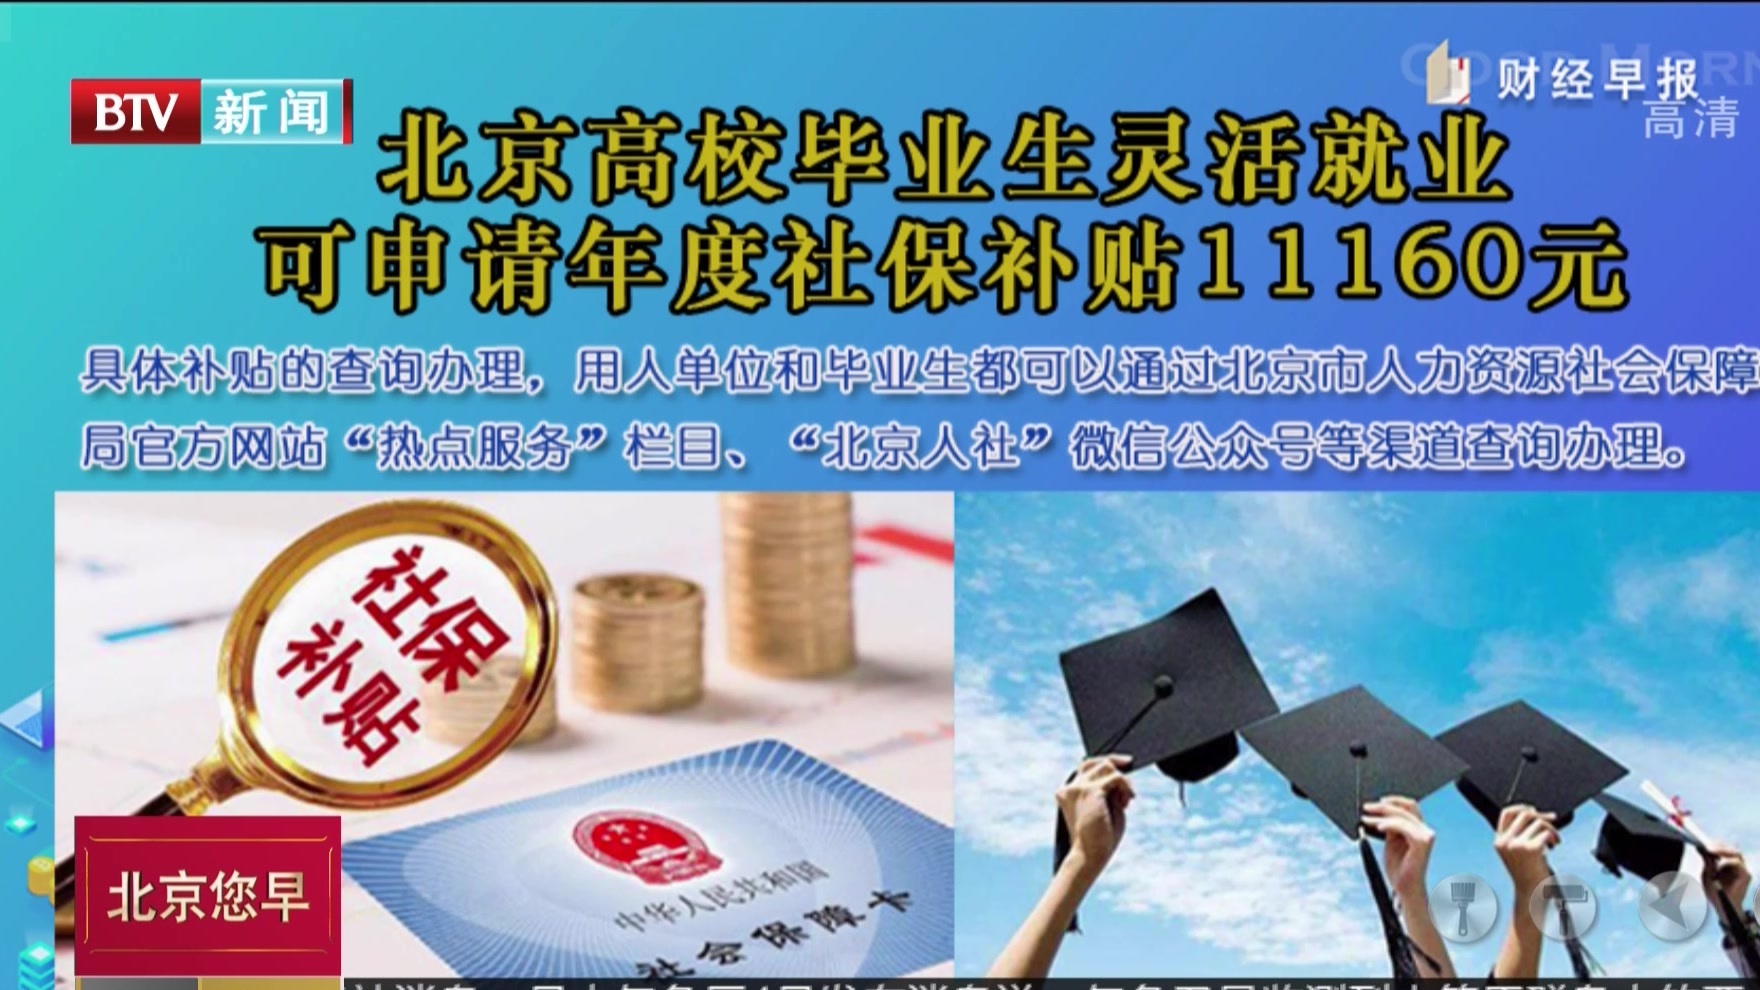 北京高校毕业生灵活就业可申请年度社保补贴11160元